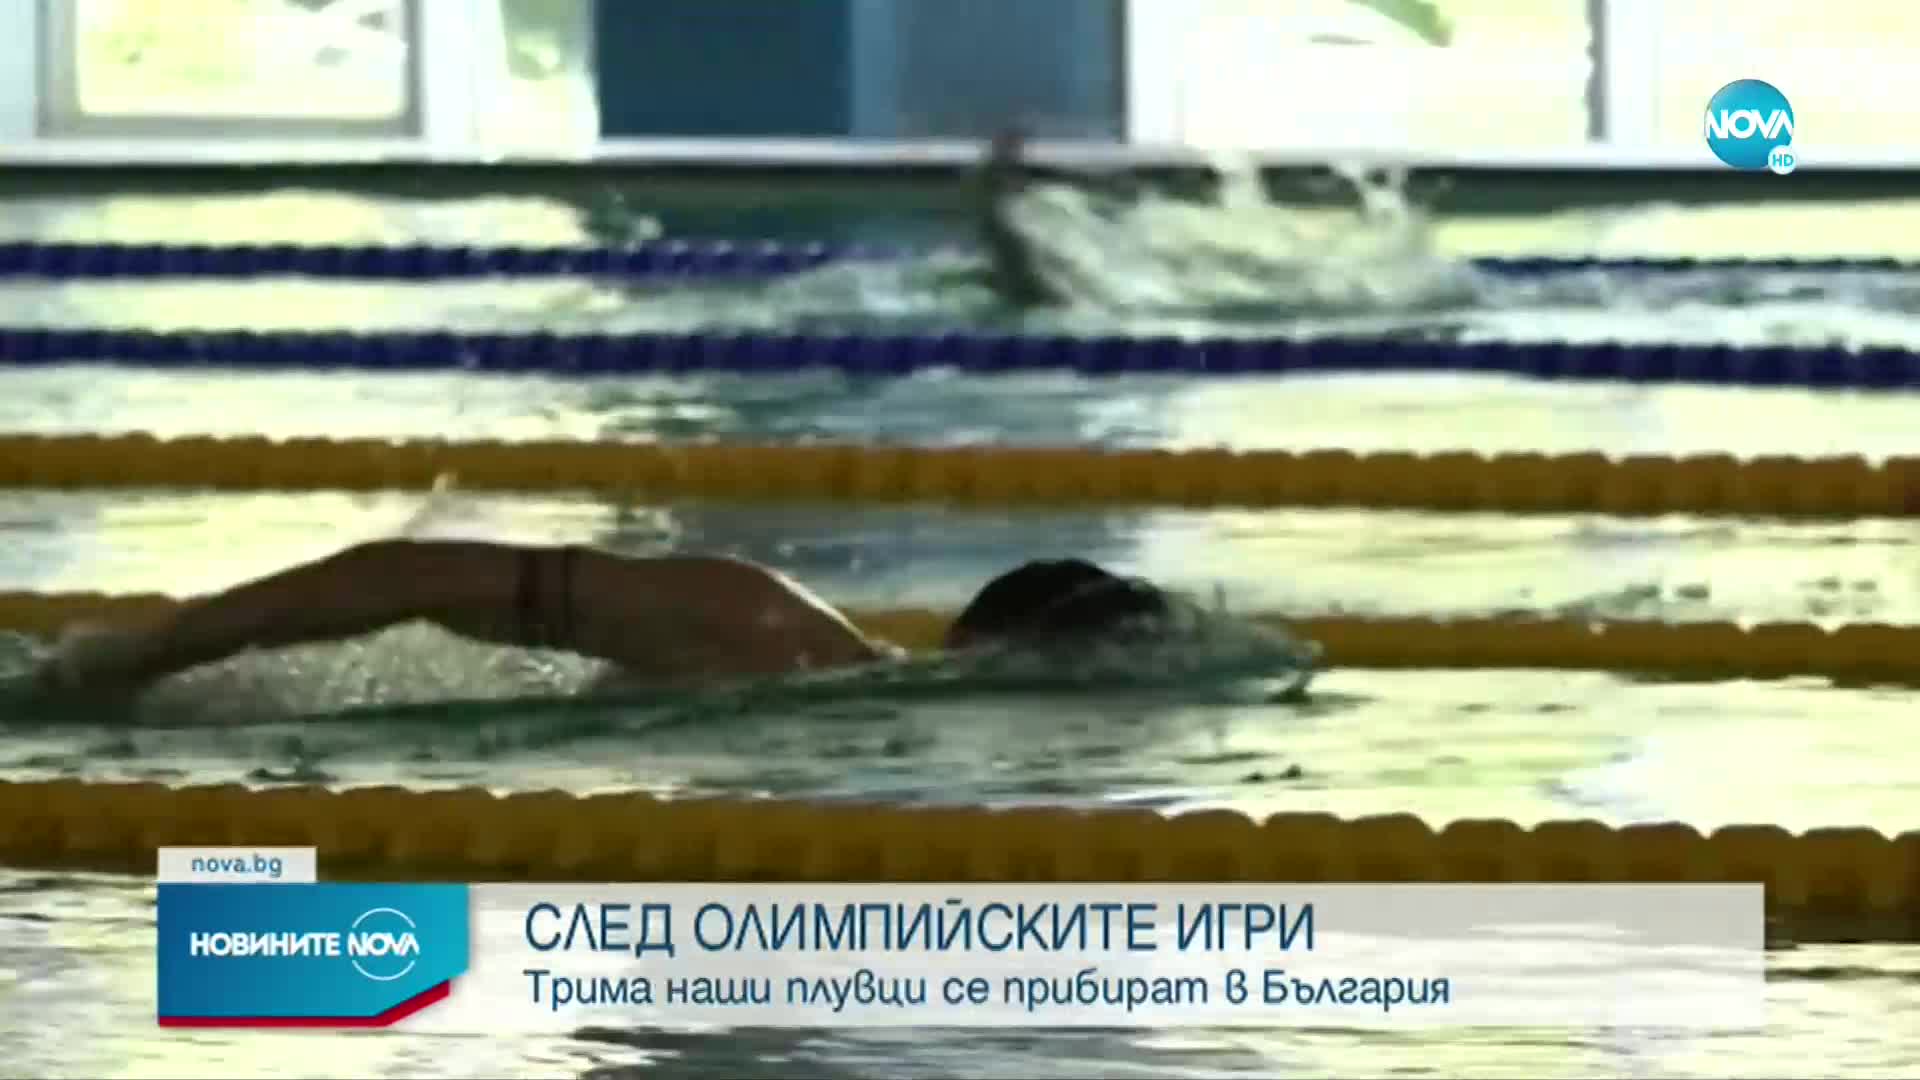 СЛЕД ОЛИМПИЙСКИТЕ ИГРИ: Трима наши плувци се прибират в България